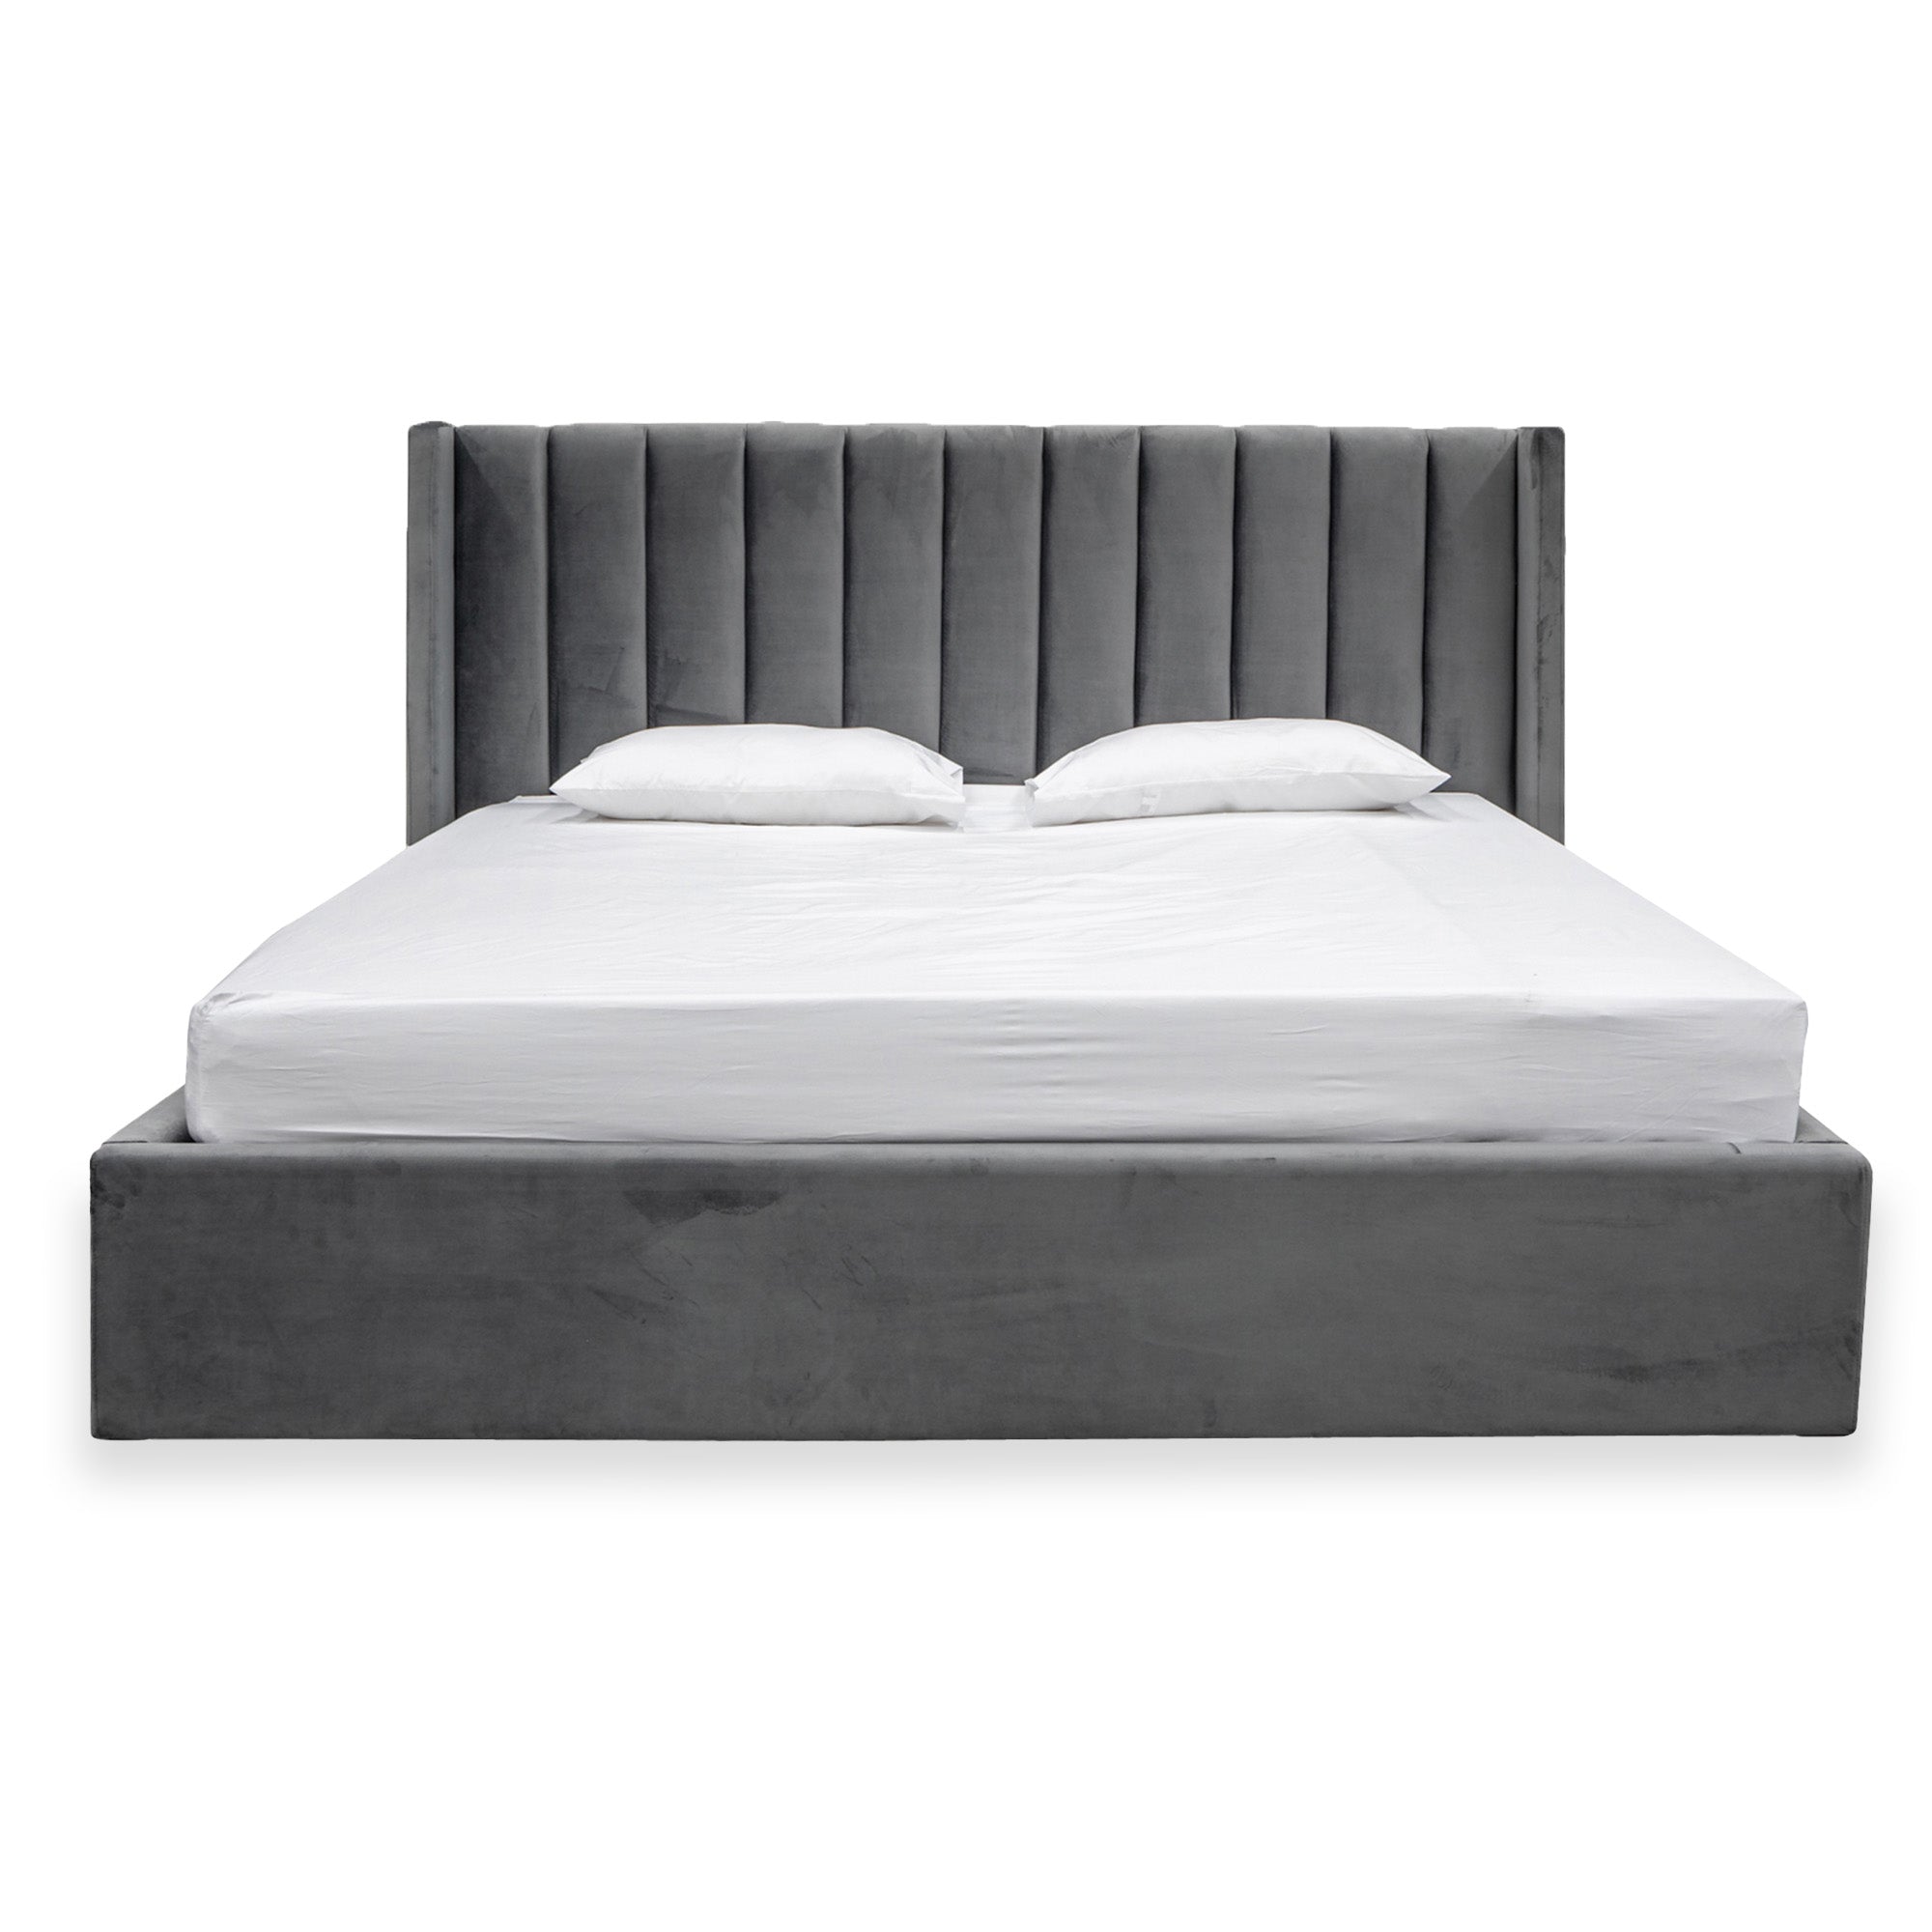 Hillsdale King Bed Frame - Wide Base in Charcoal Velvet